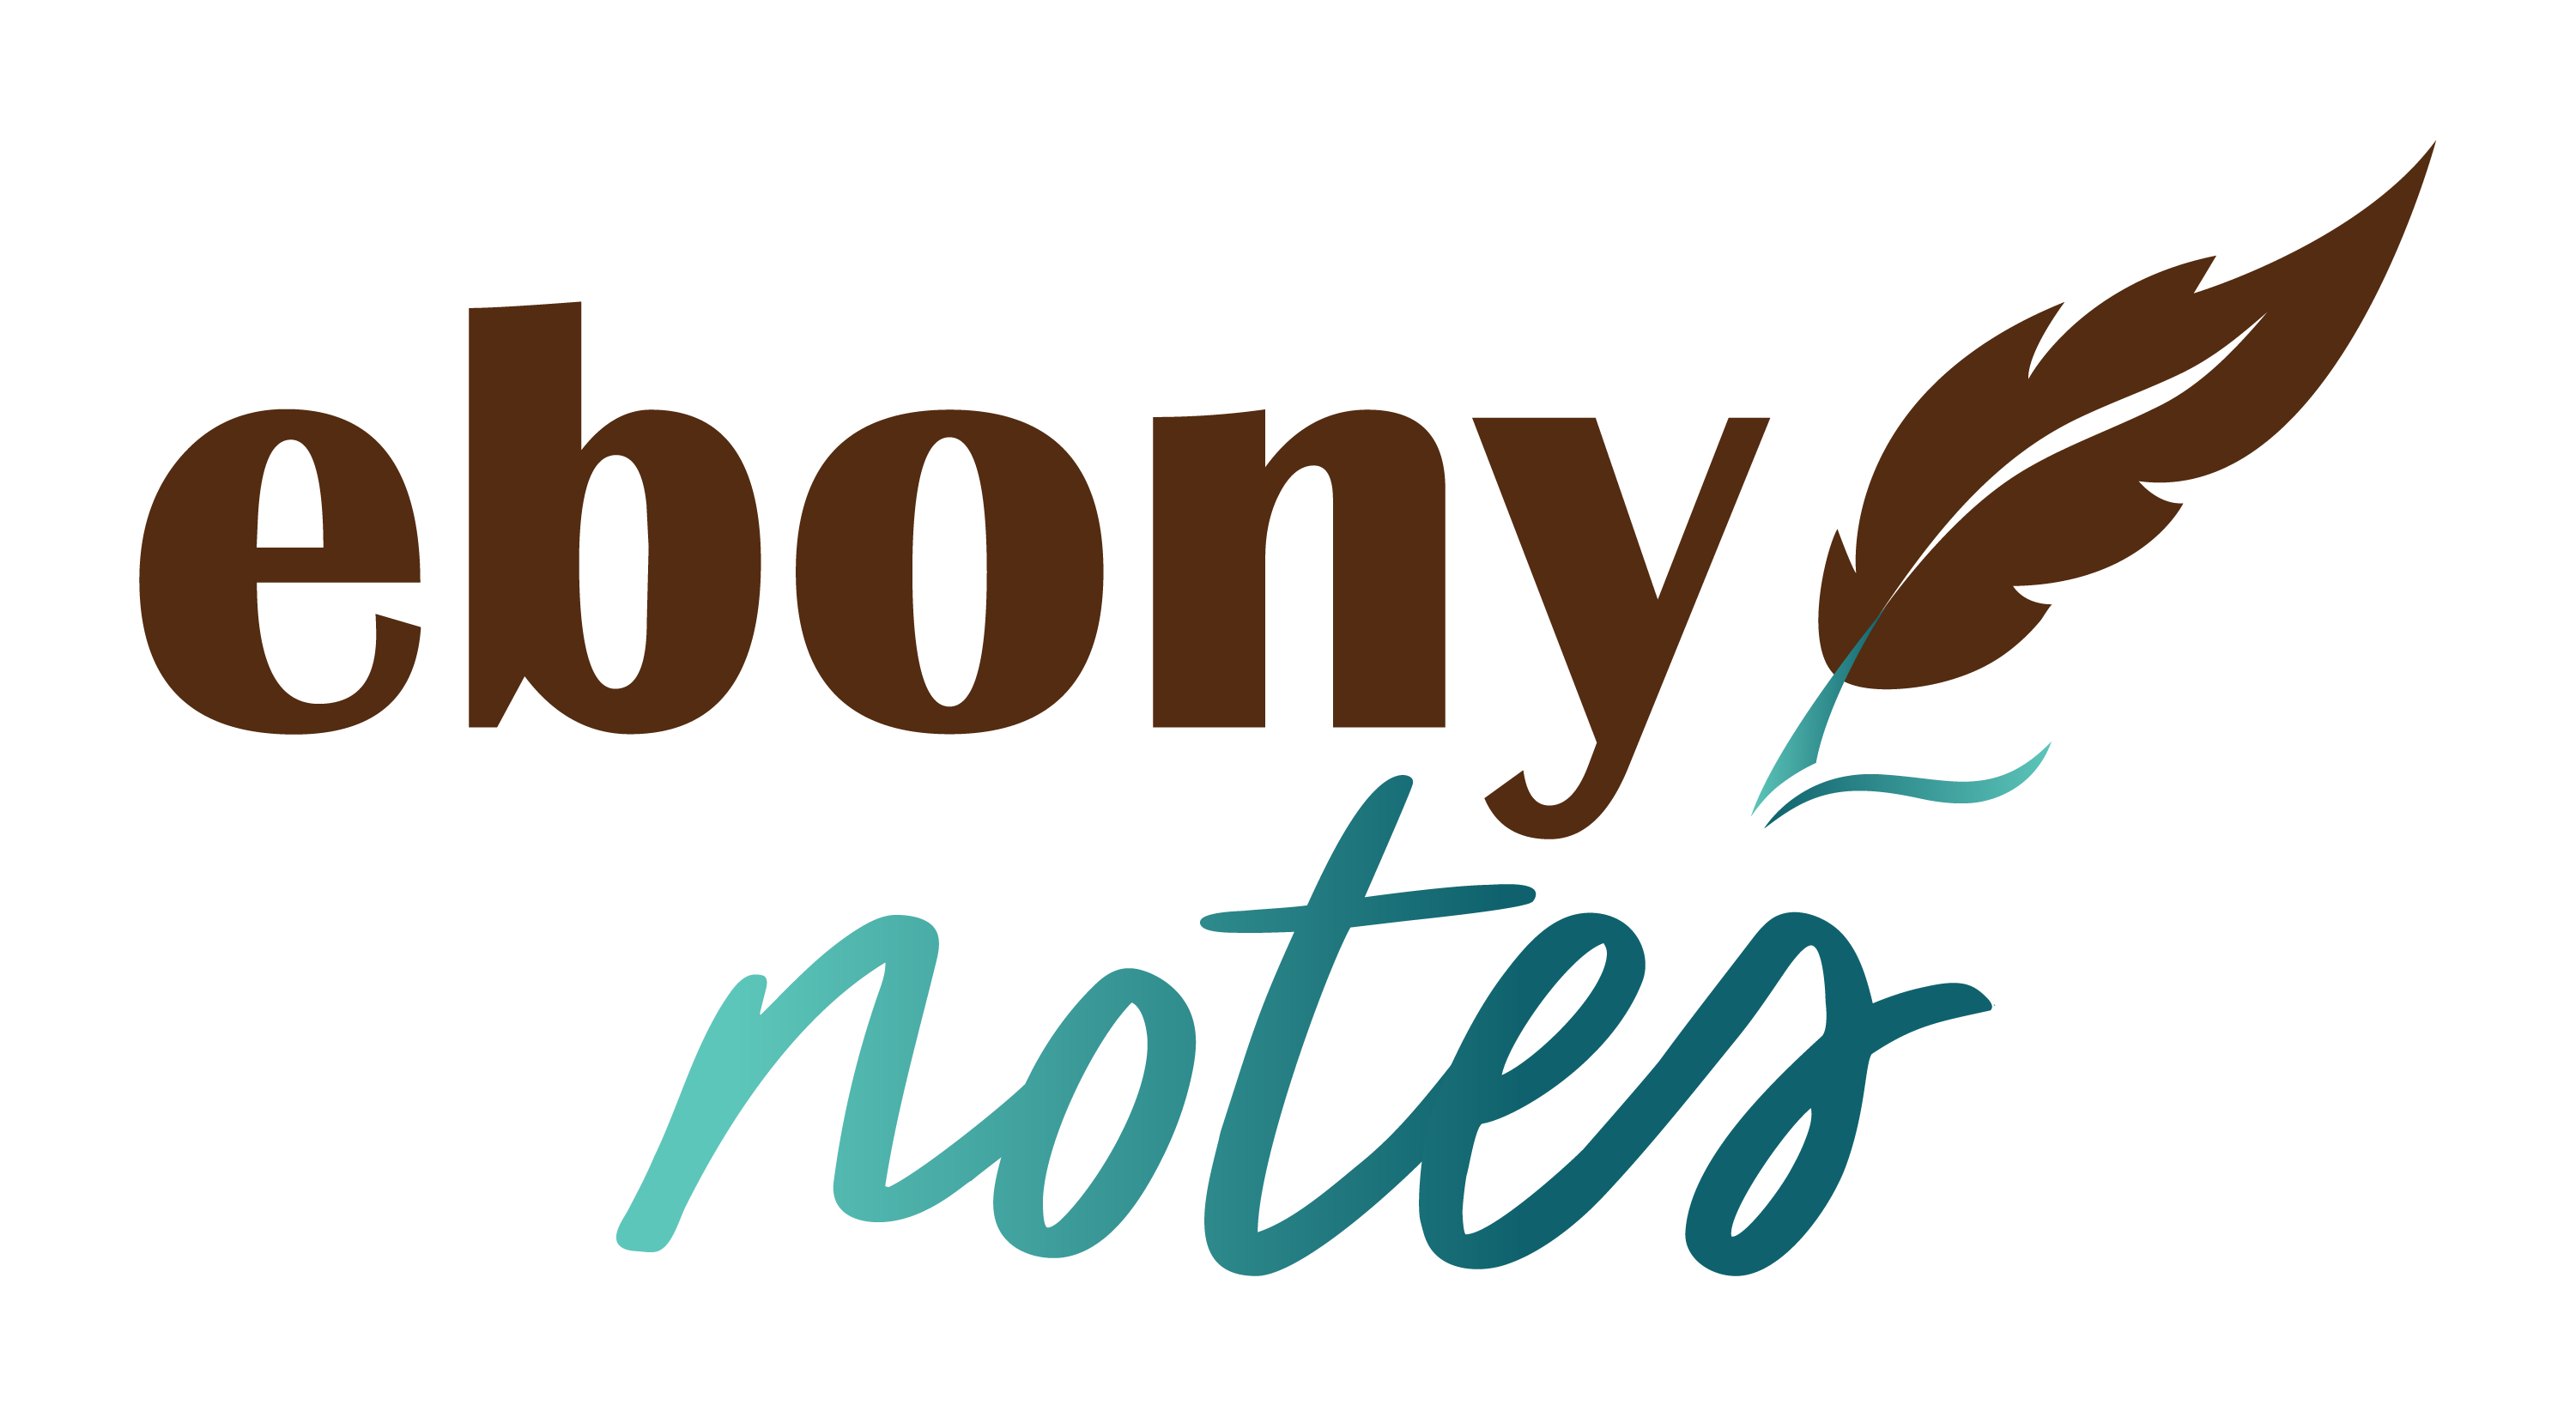 Ebony Notes Company